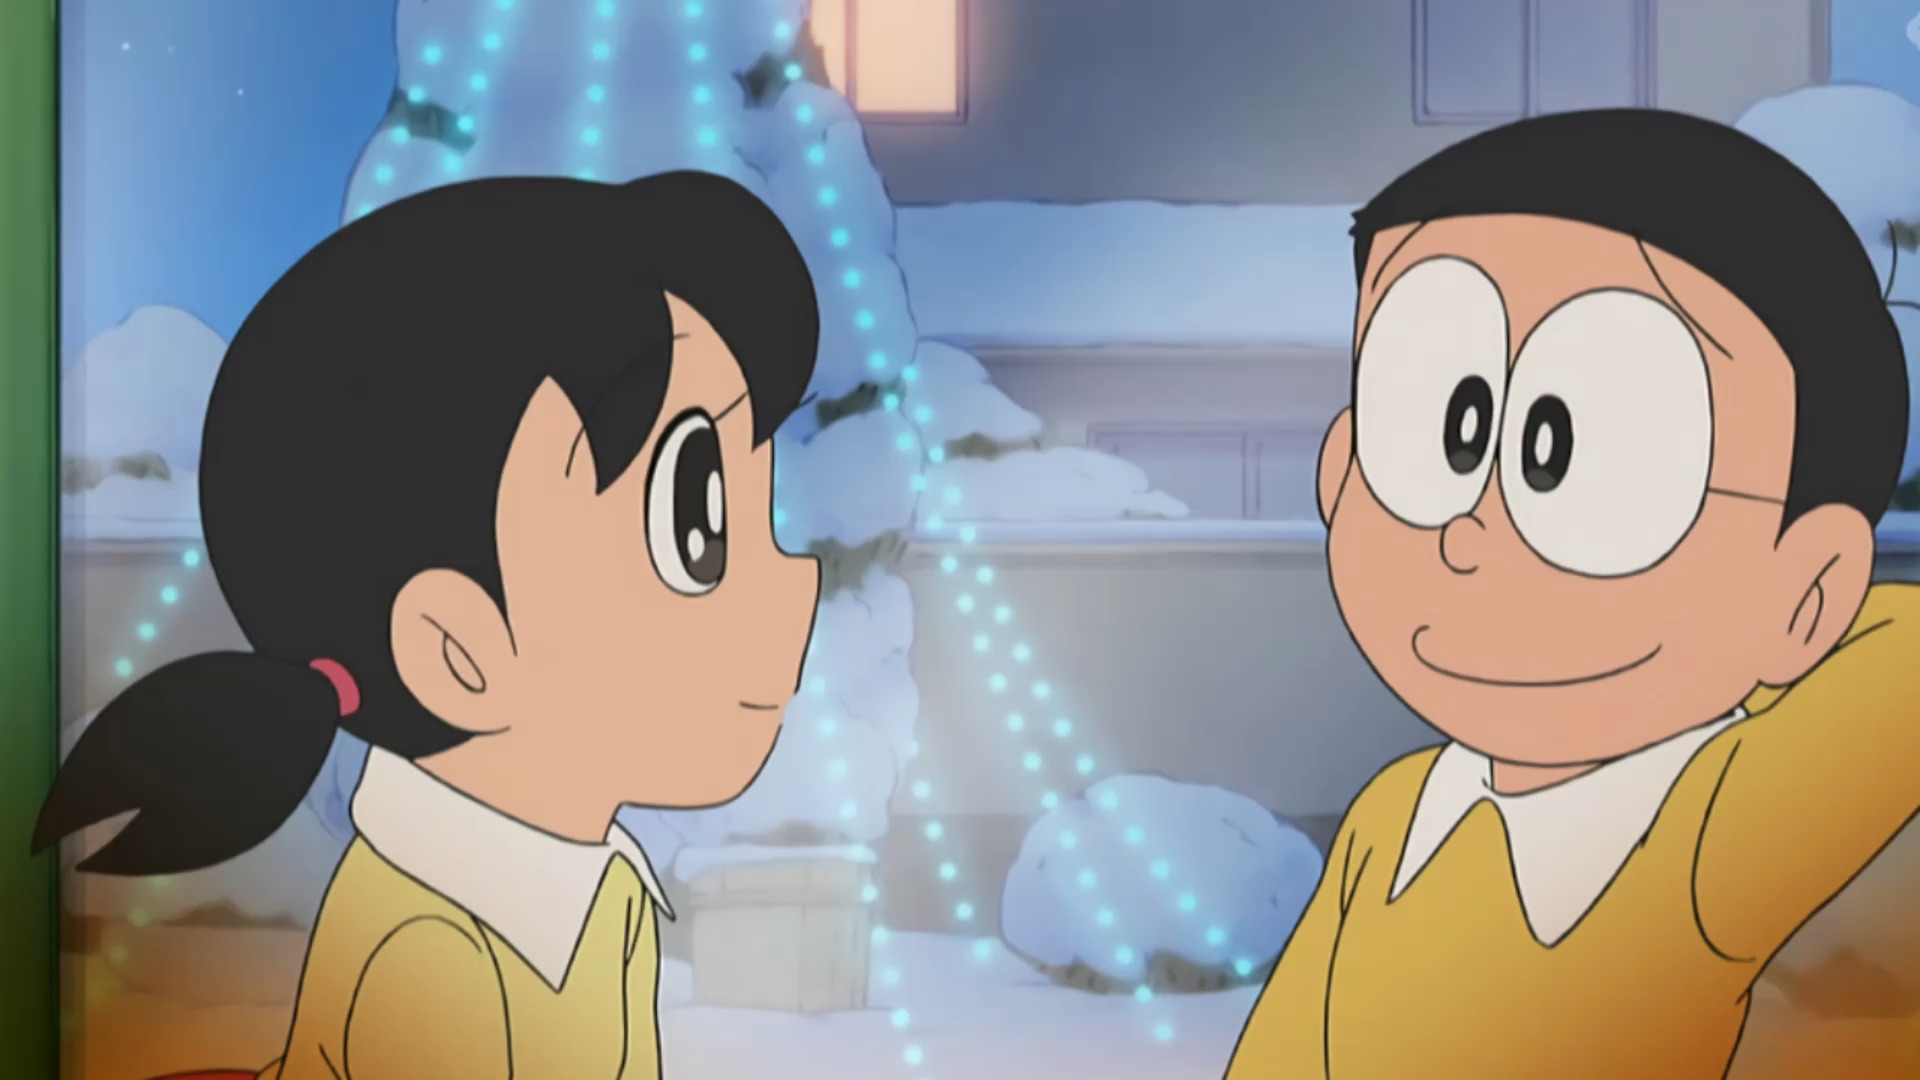 Cùng xem bức hình tuyệt đẹp để ngắm nhìn nhân vật nữ xinh đẹp Shizuka dịu dàng trong bộ truyện tranh nổi tiếng Doraemon. Với nụ cười duyên dáng và gương mặt trẻ trung, Shizuka chắc chắn sẽ mang lại cho bạn những giây phút thư giãn và vui vẻ đó ạ.